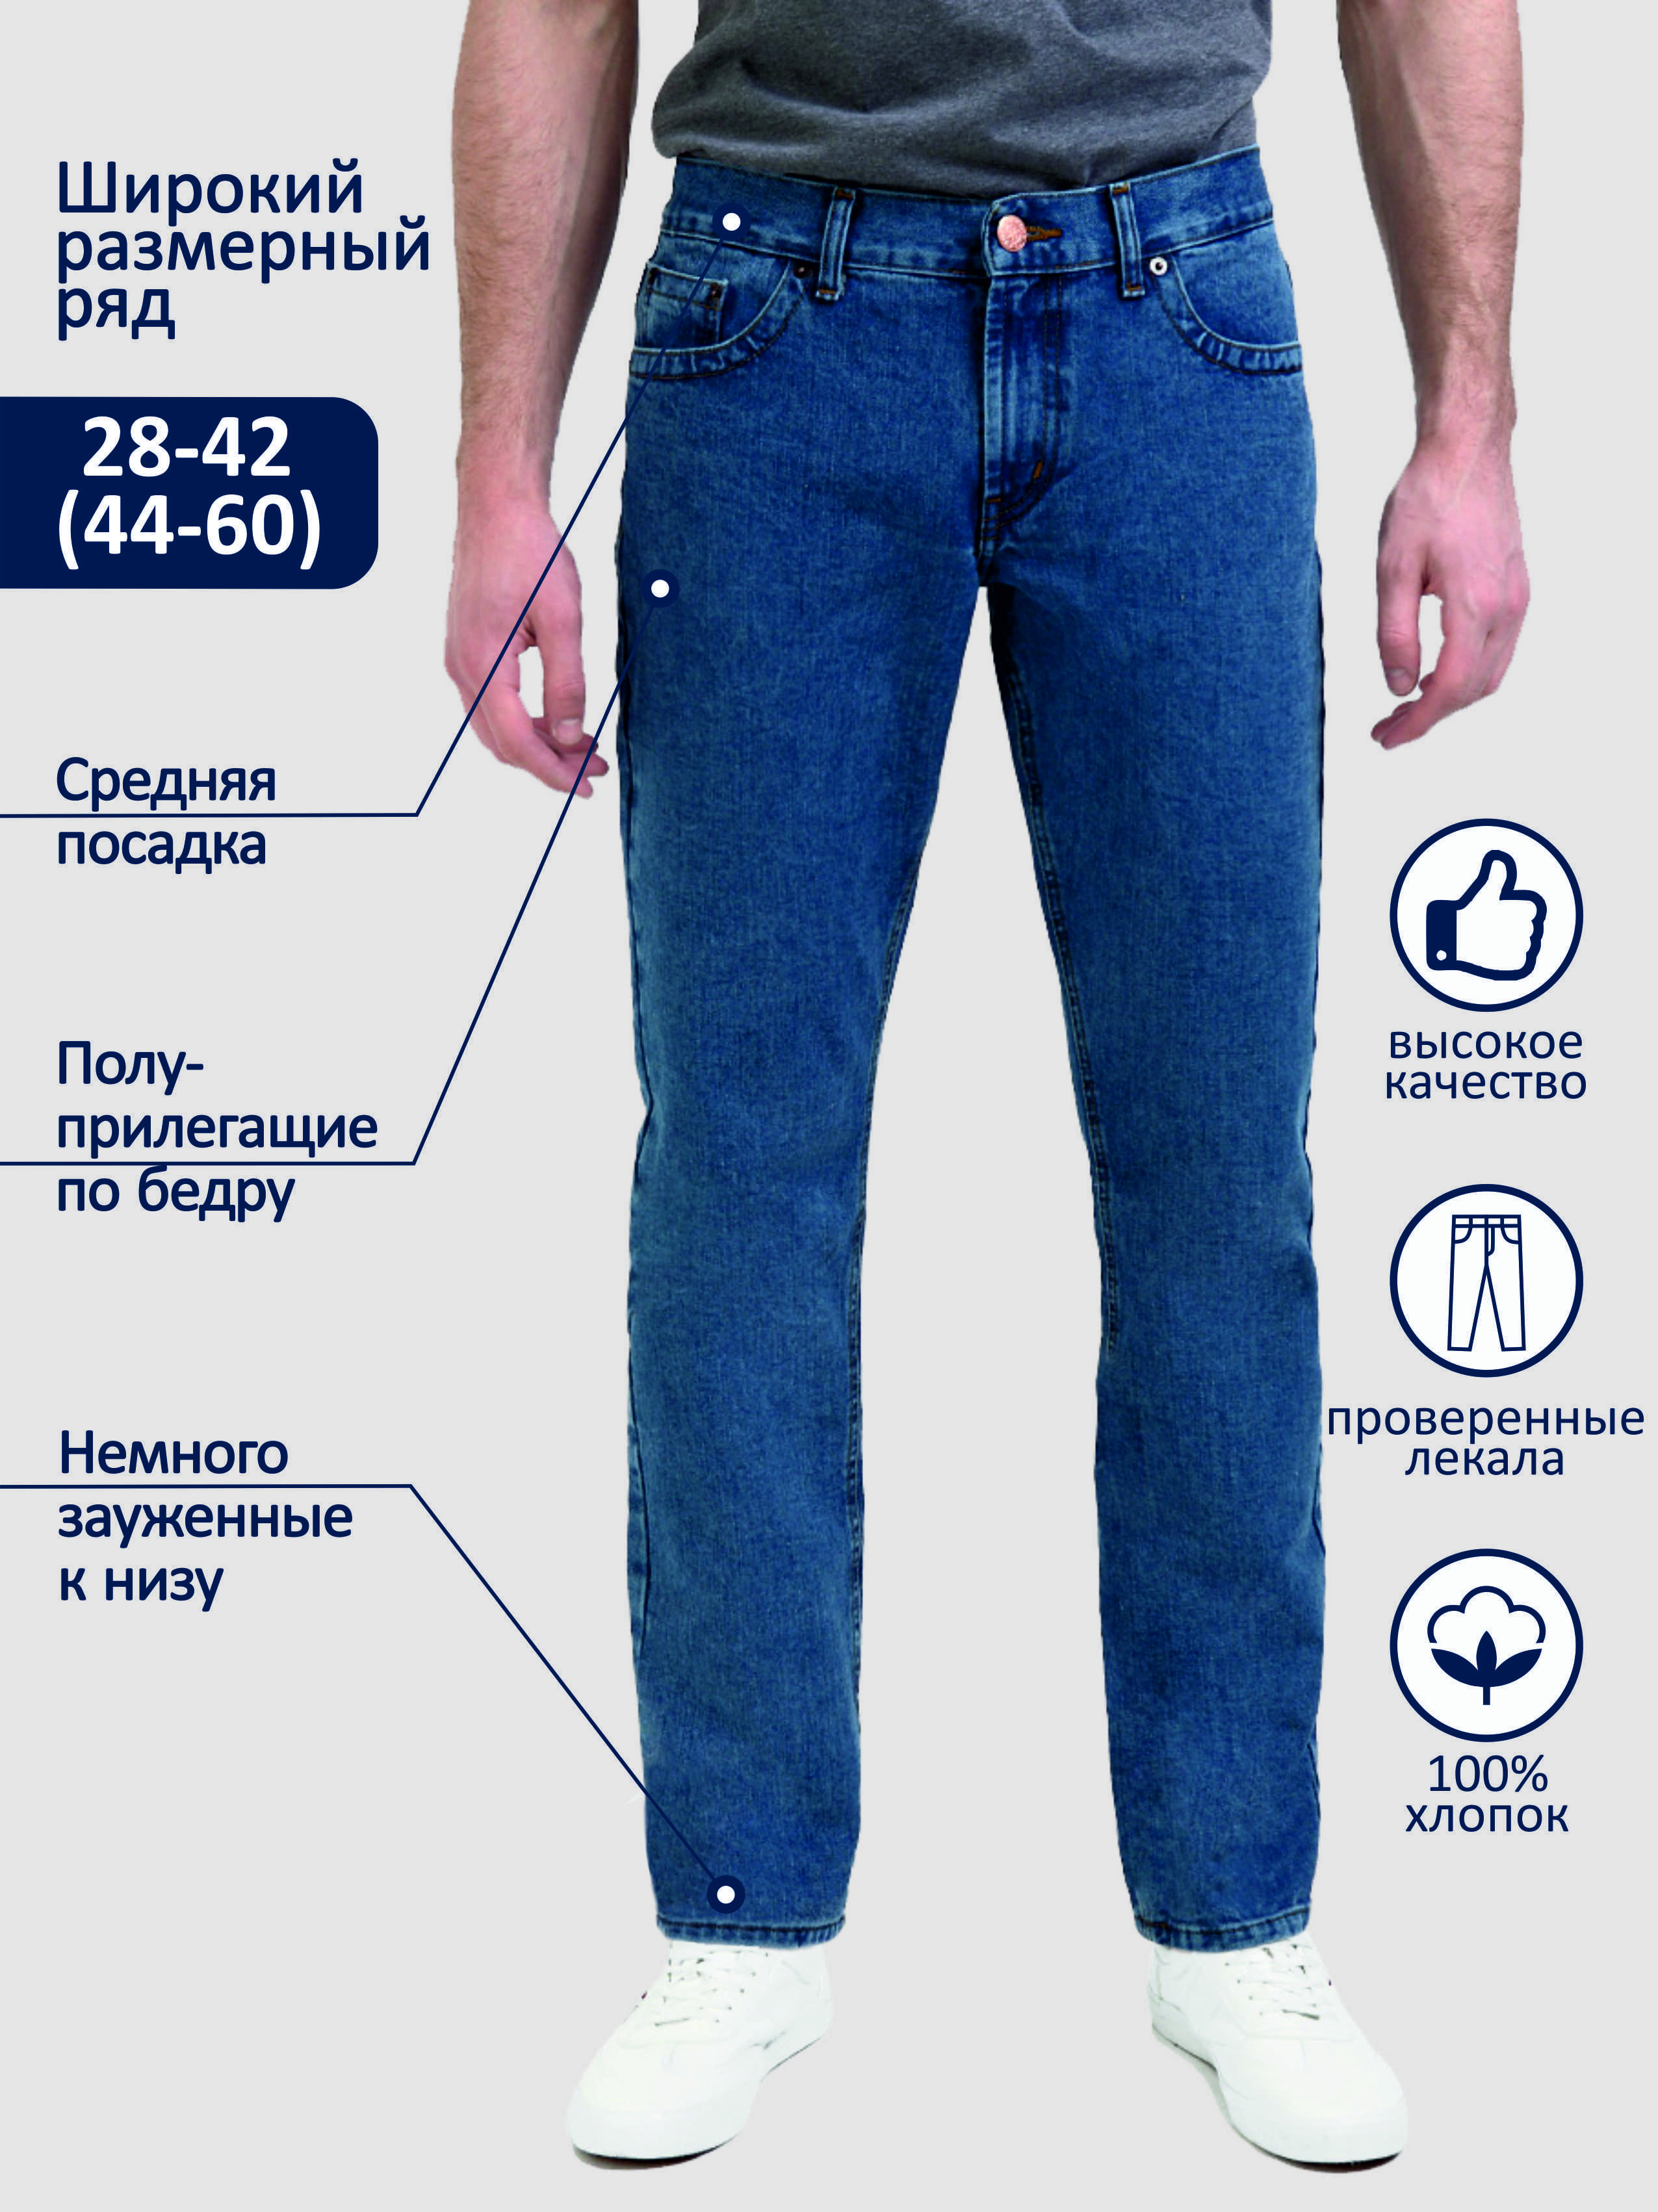 Типы джинсов мужских